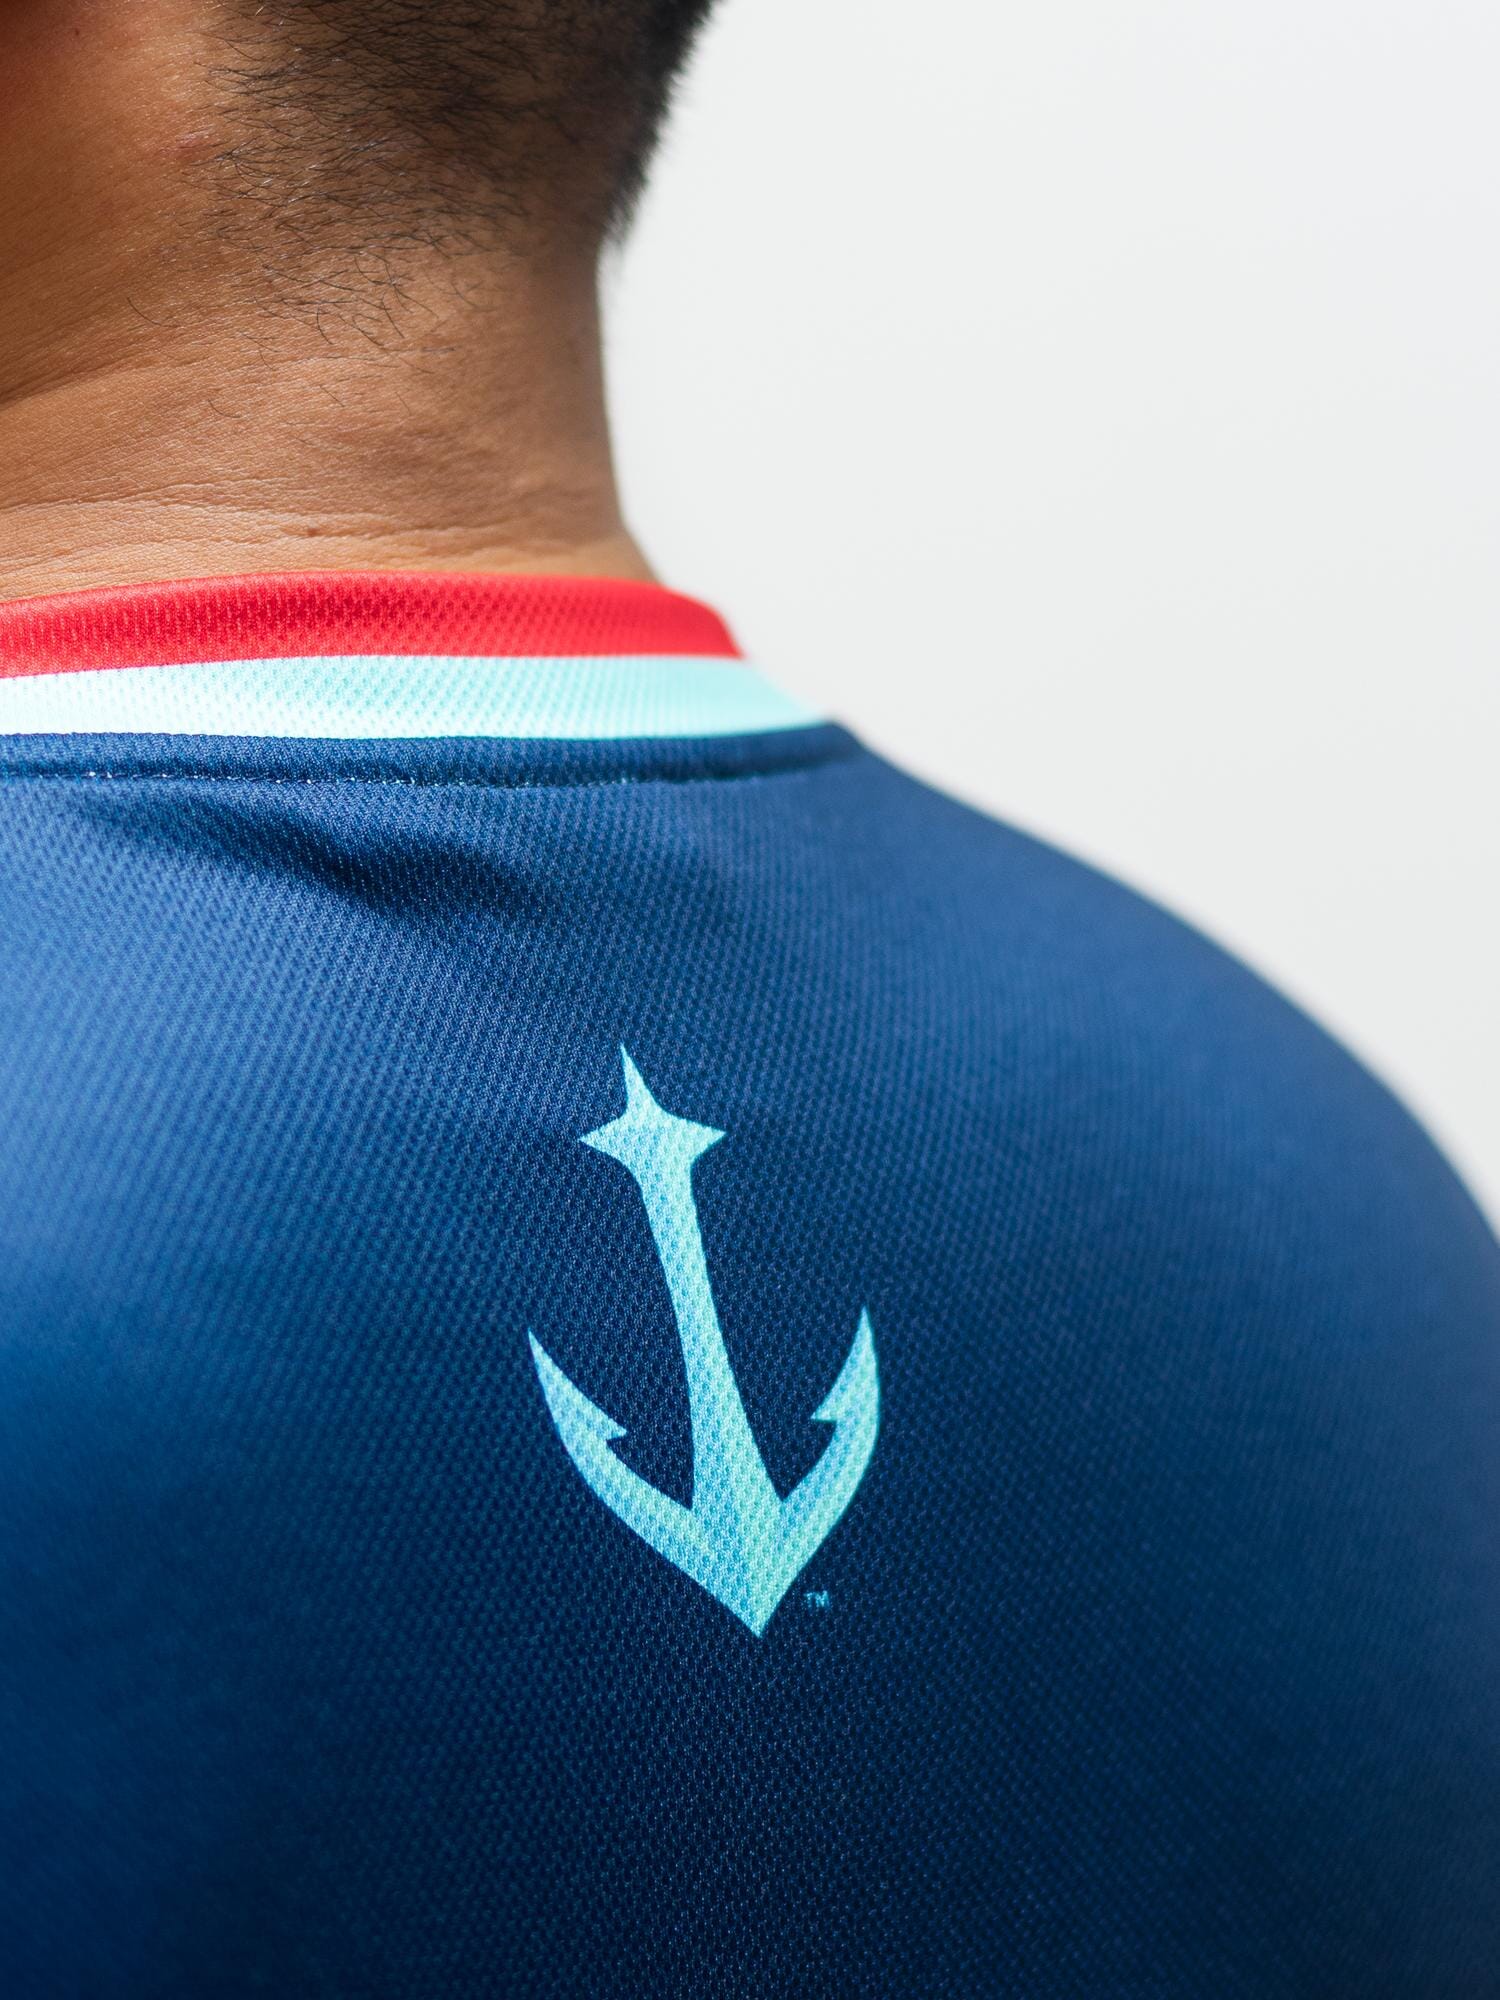 NHL Seattle Kraken Shoulder Patch Navy T-Shirt